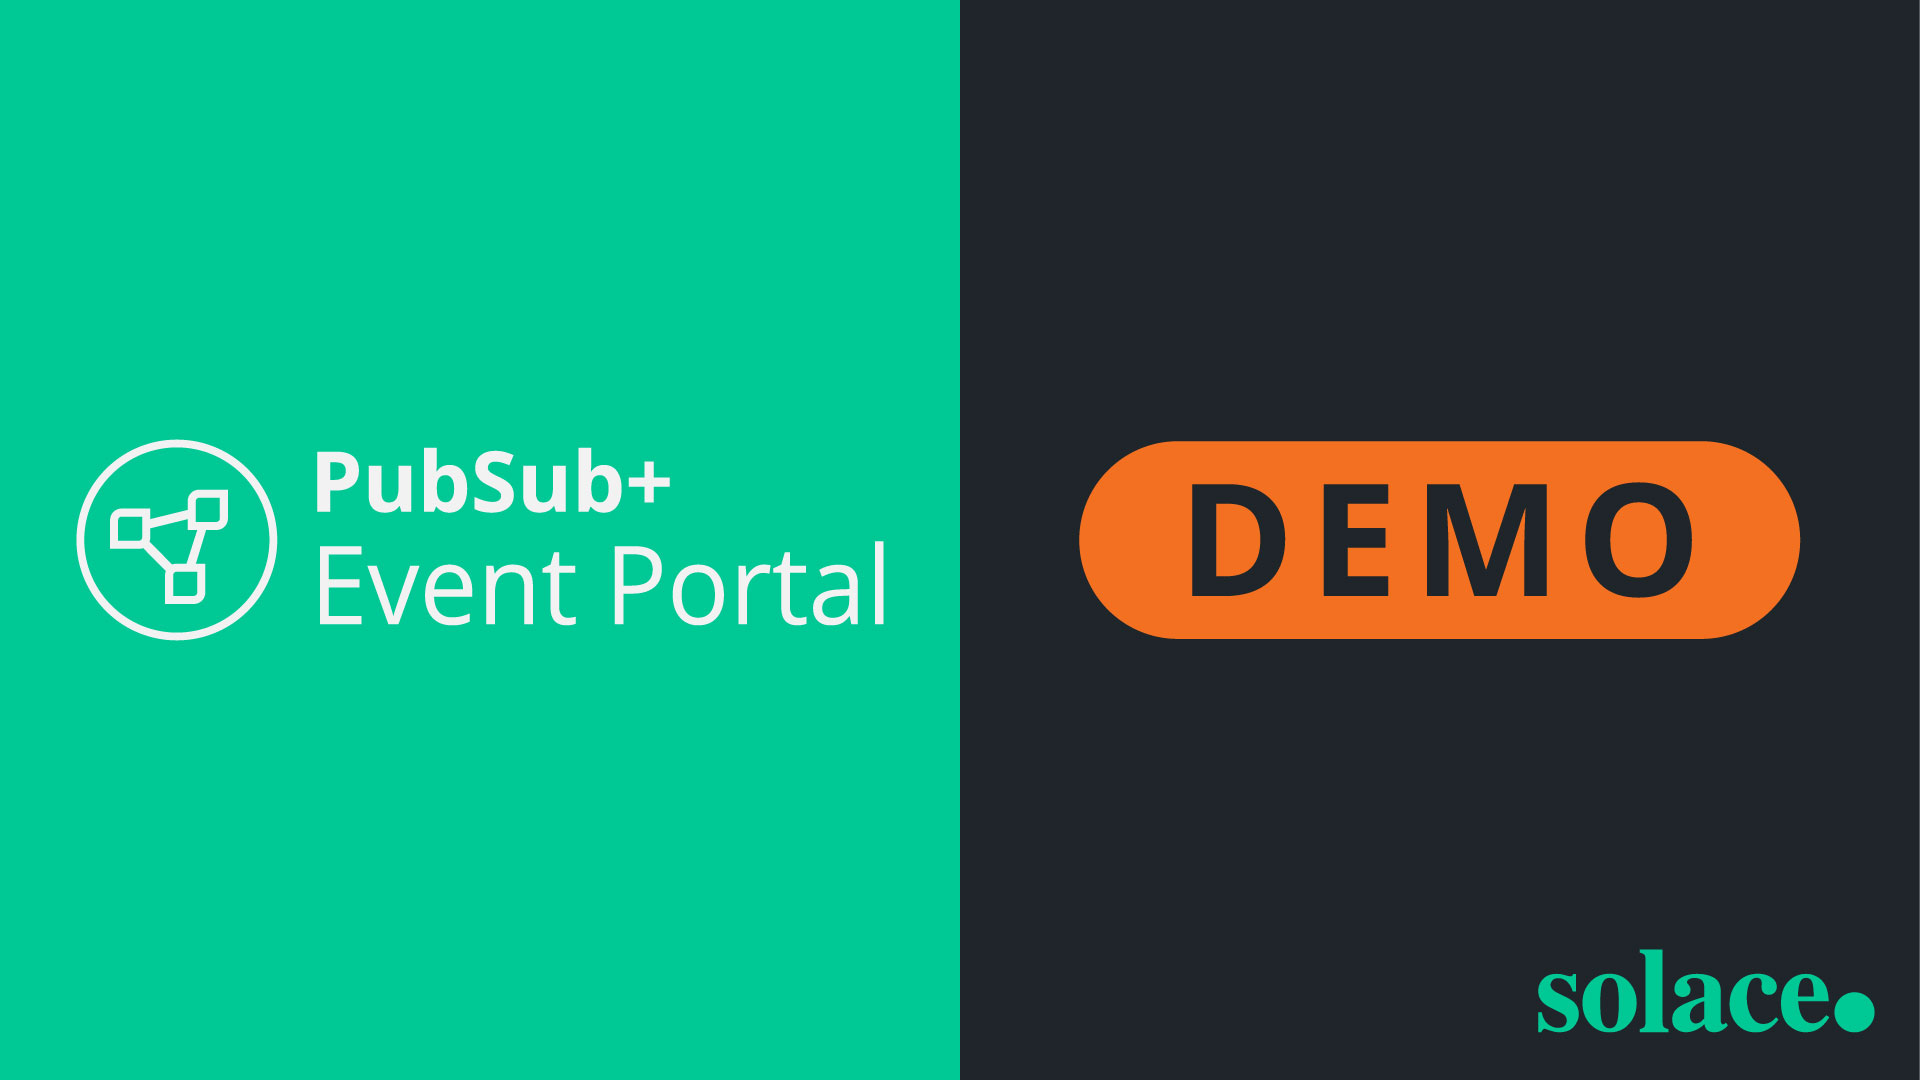 Demonstração de caso de uso do PubSub+ Event Portal